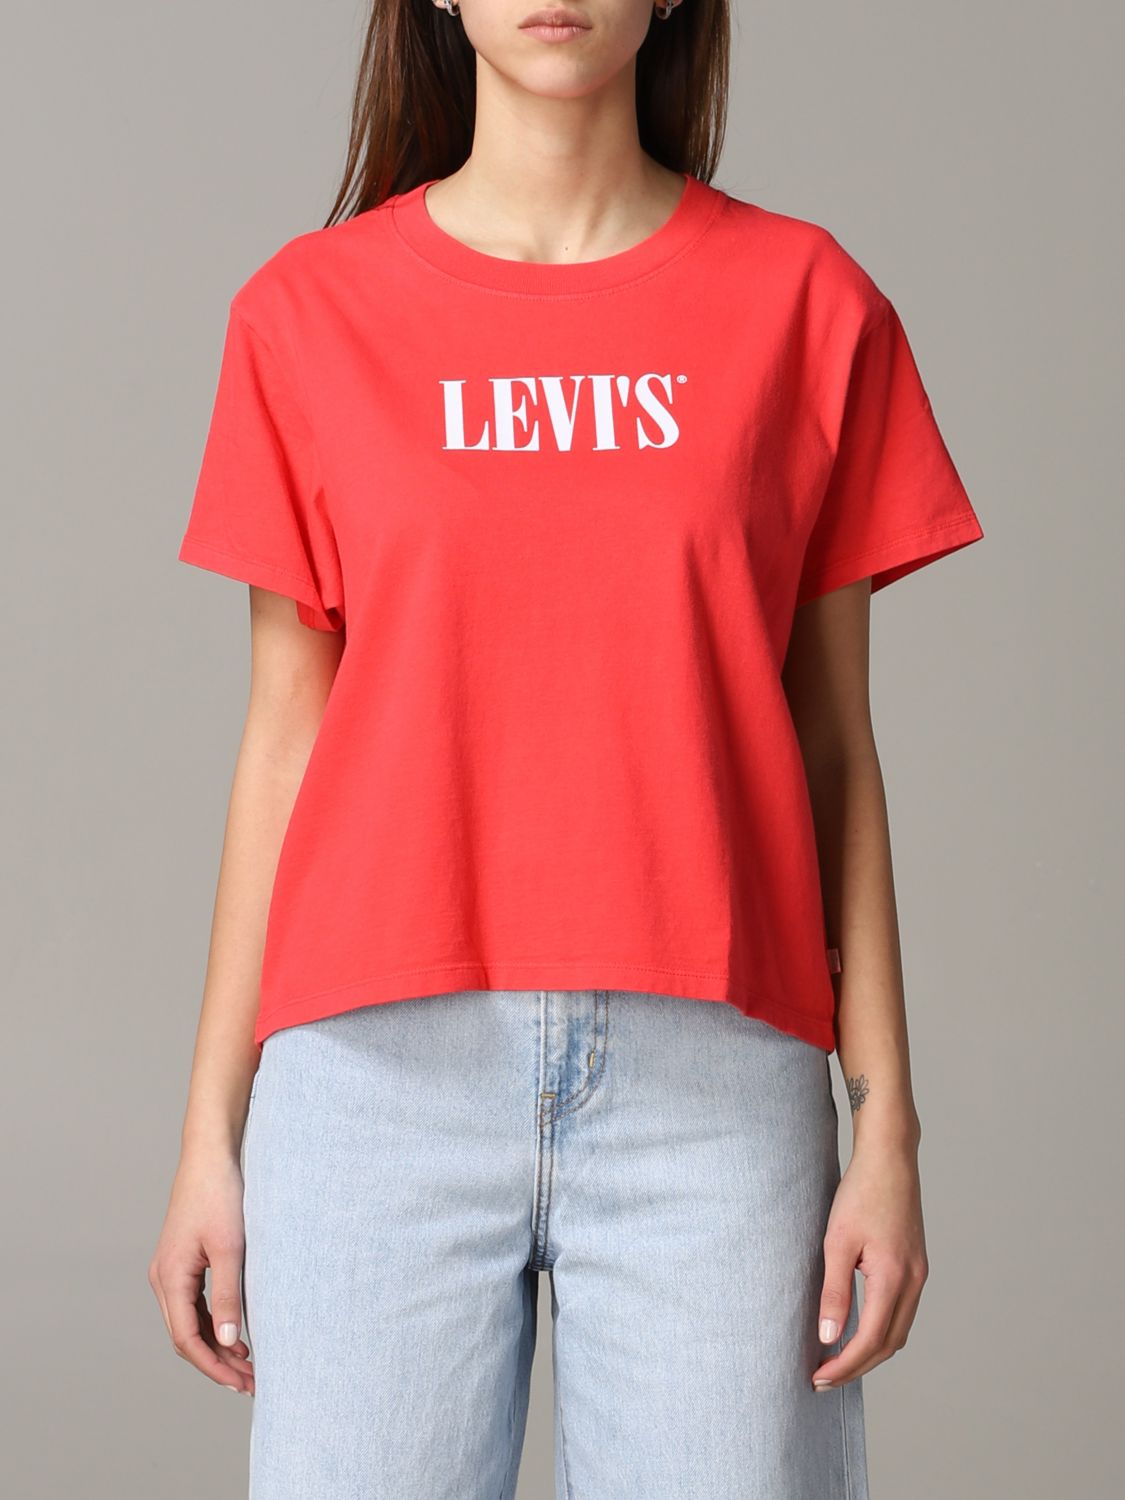 womens levis shirt